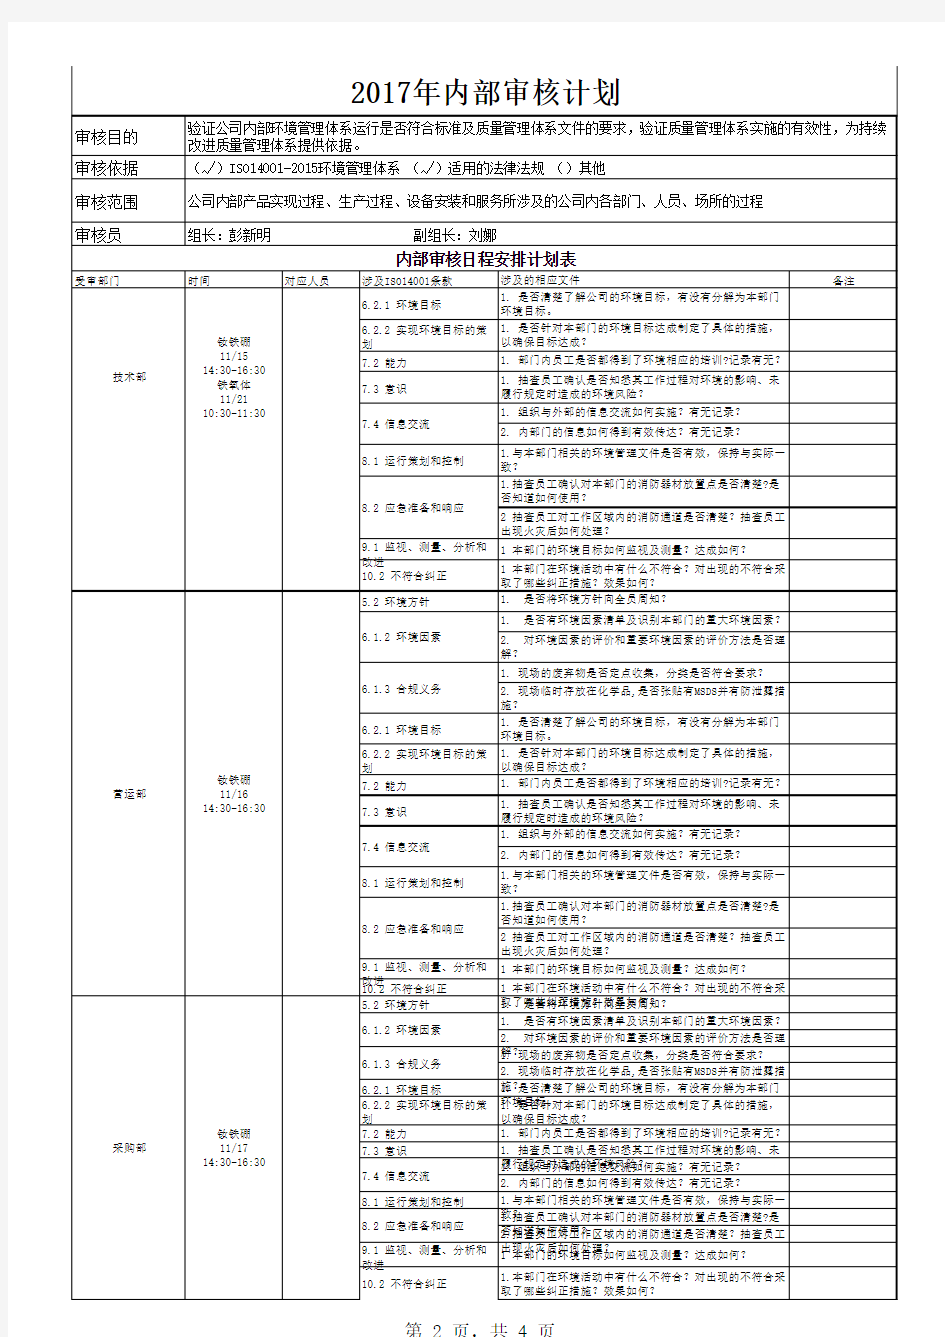 ISO14001-2015体系审核计划表